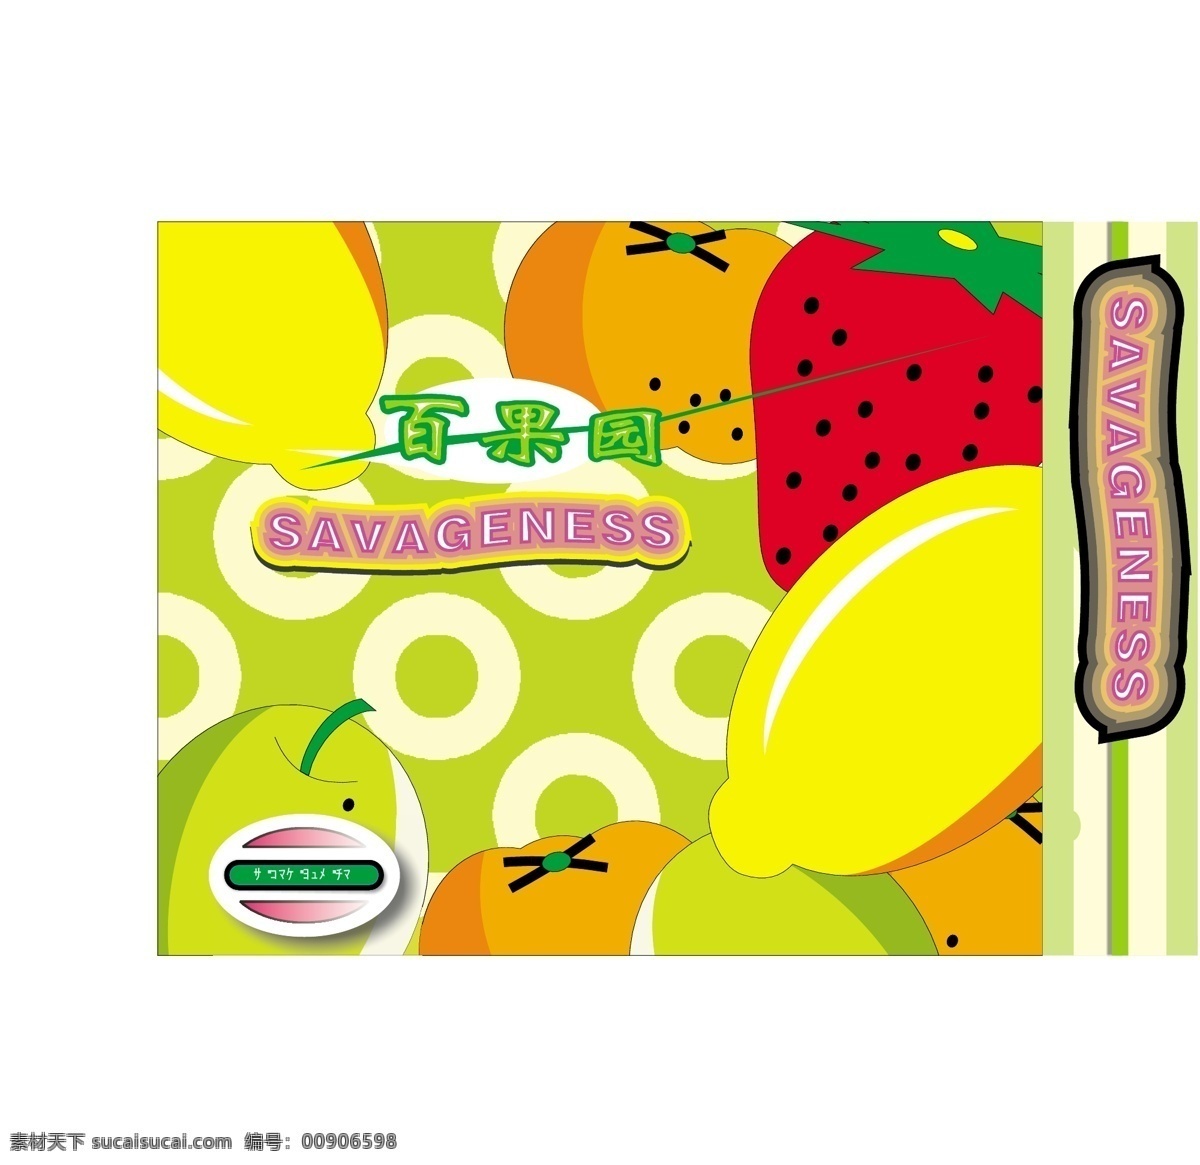 草莓 果汁 梨 南瓜 苹果 矢量图库 水果 混合 饮料 海报 矢量 模板下载 日常生活